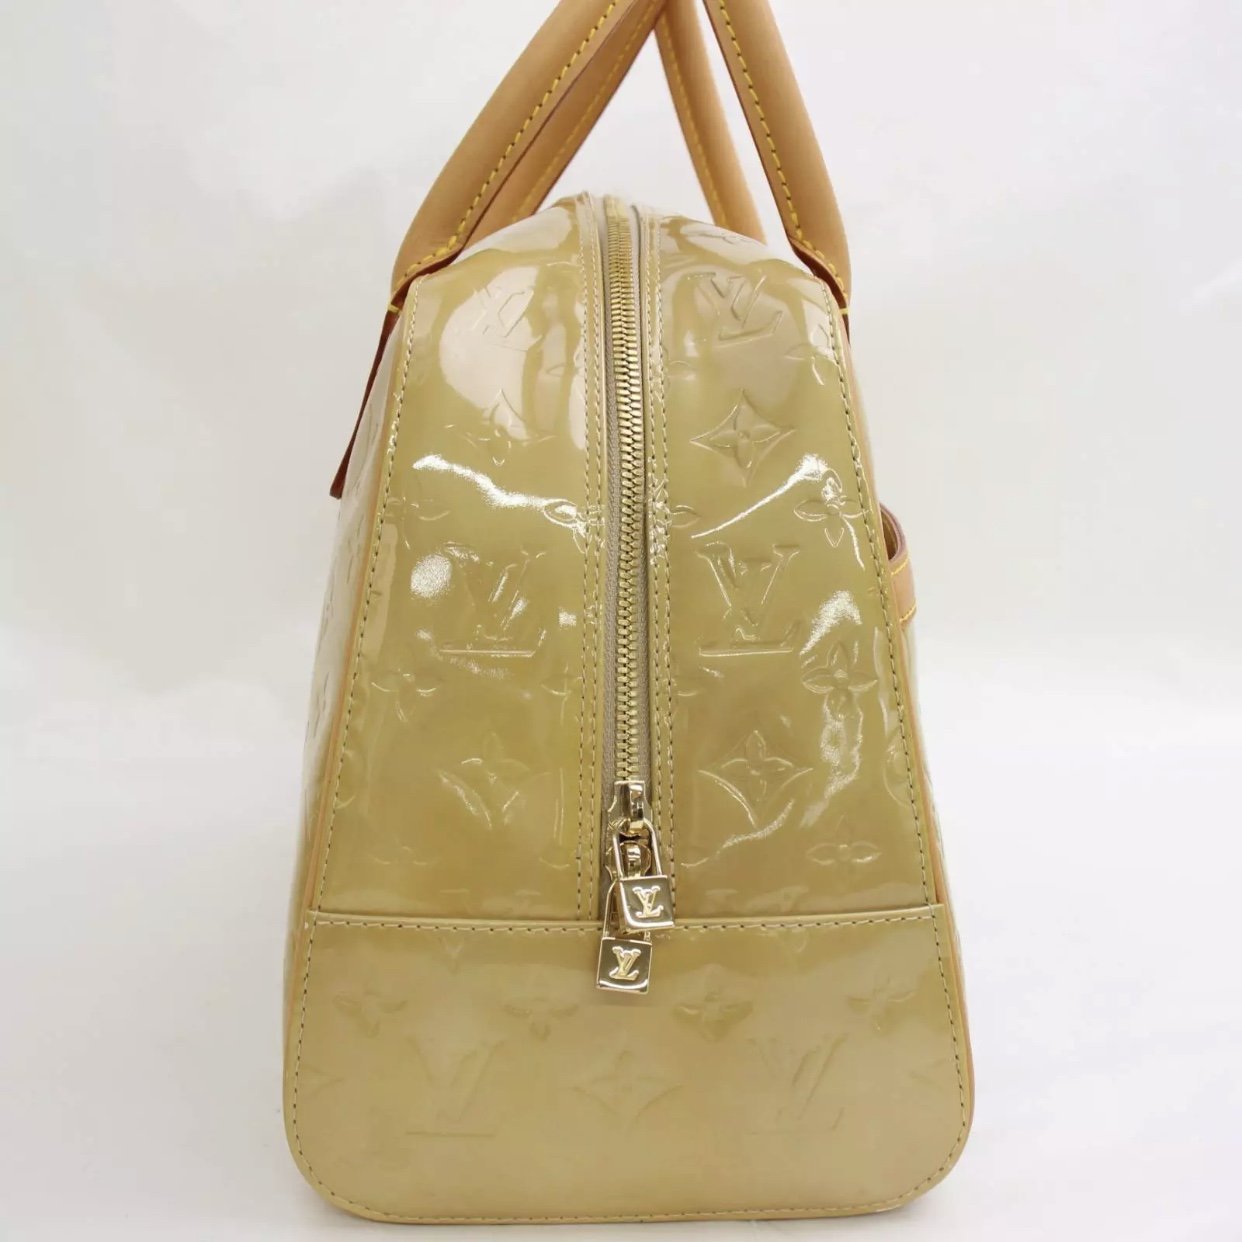 Vintage genuine LOUIS VUITTON Vernis Tompkins patent leather square bag  purse